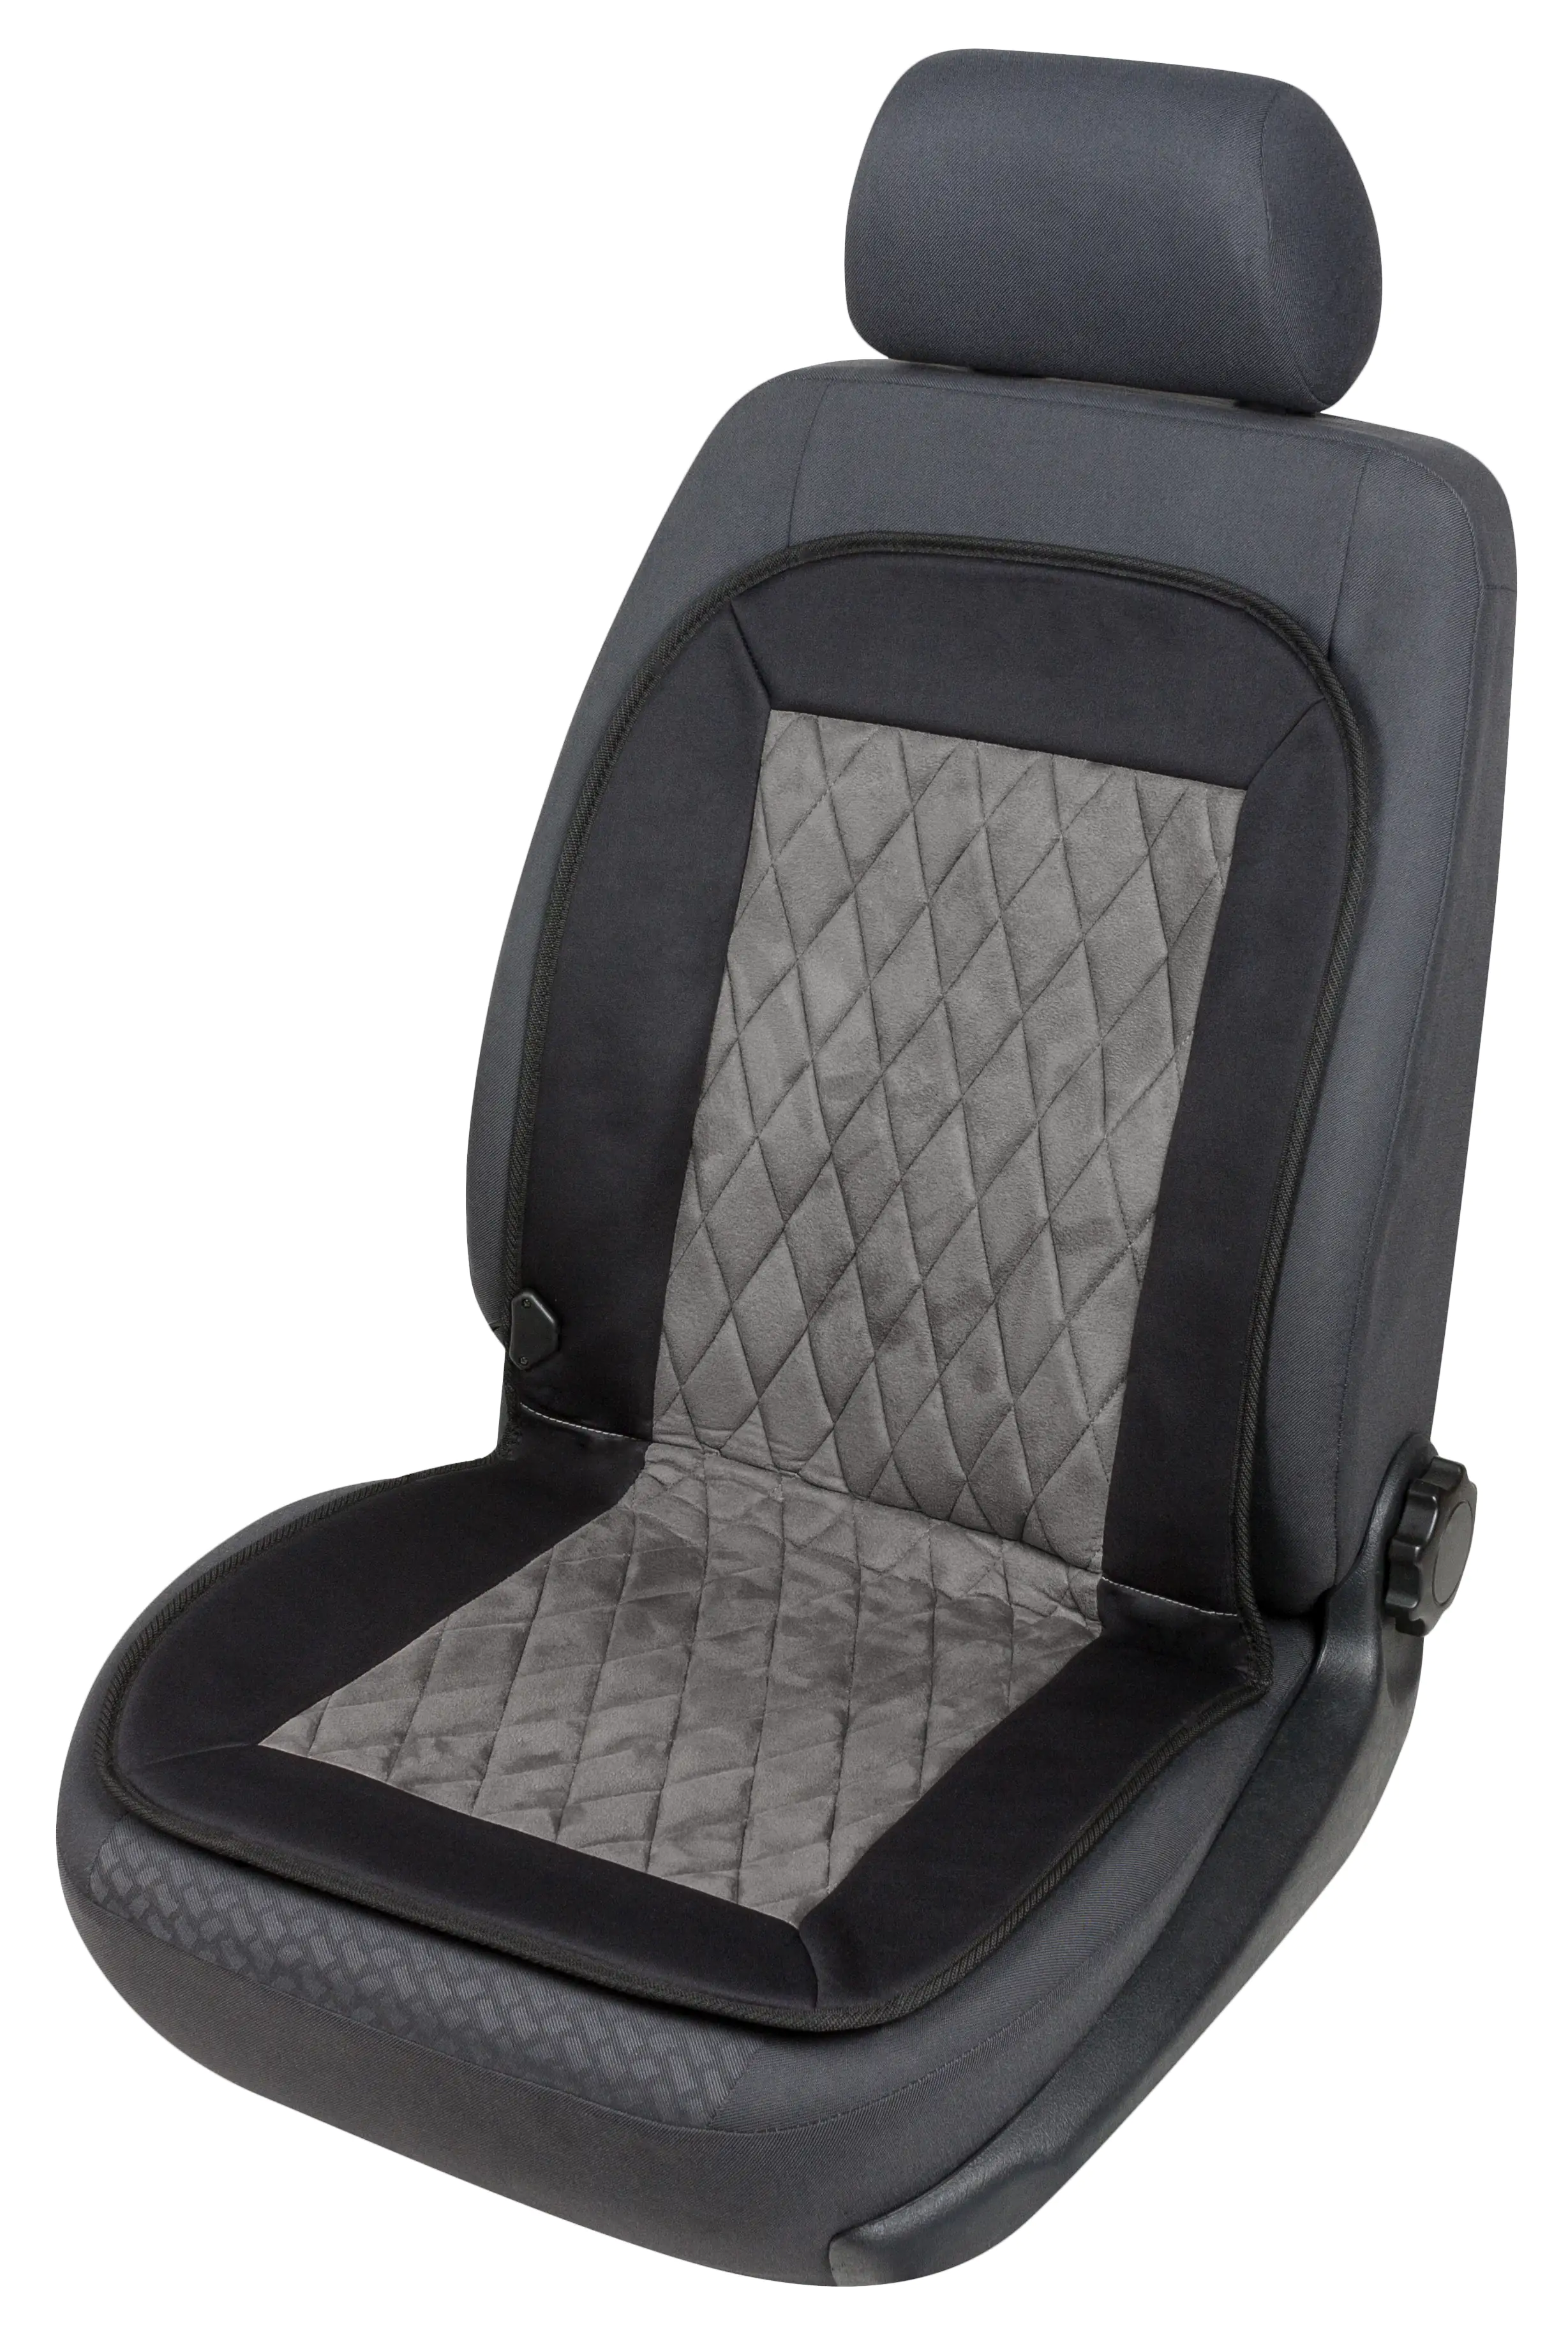 Sitzheizung aus Carbon für jeden Autositz Pkw geeignet